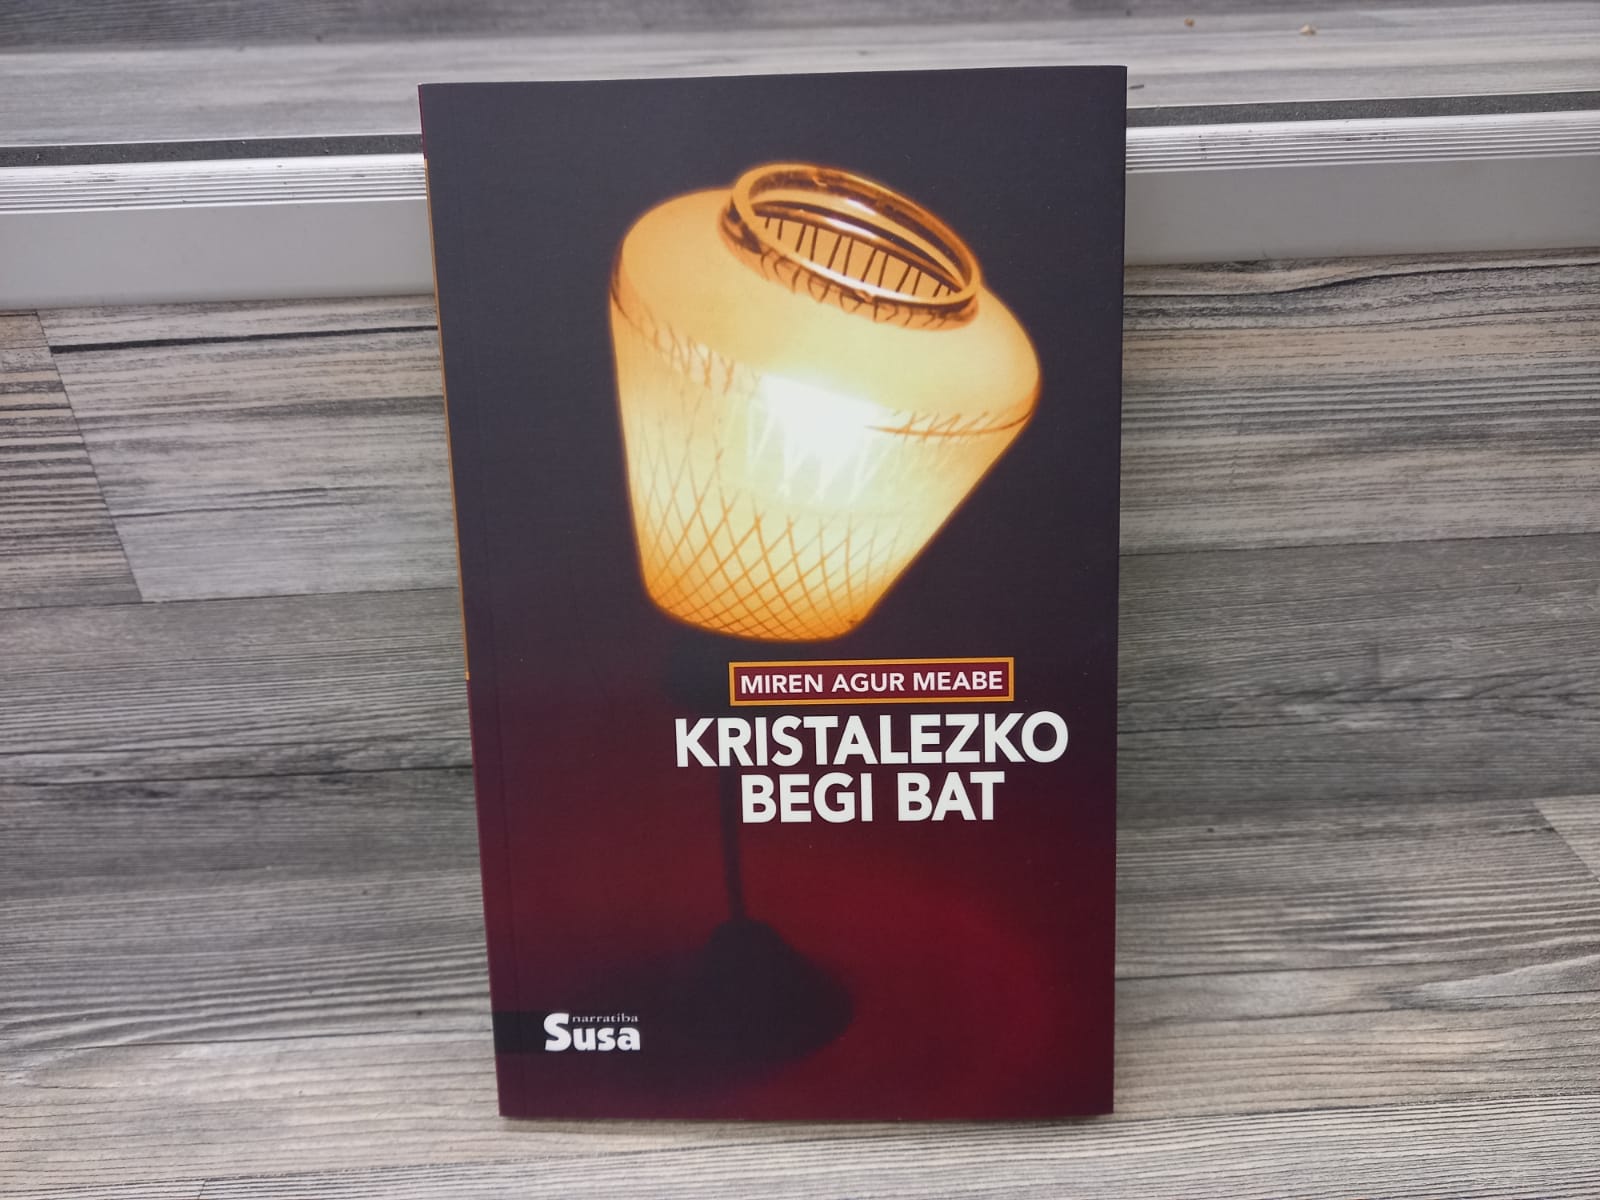 Kristalezko begi bat - Los libreros invitan a un "gran reencuentro" en la feria del sábado en Donostia